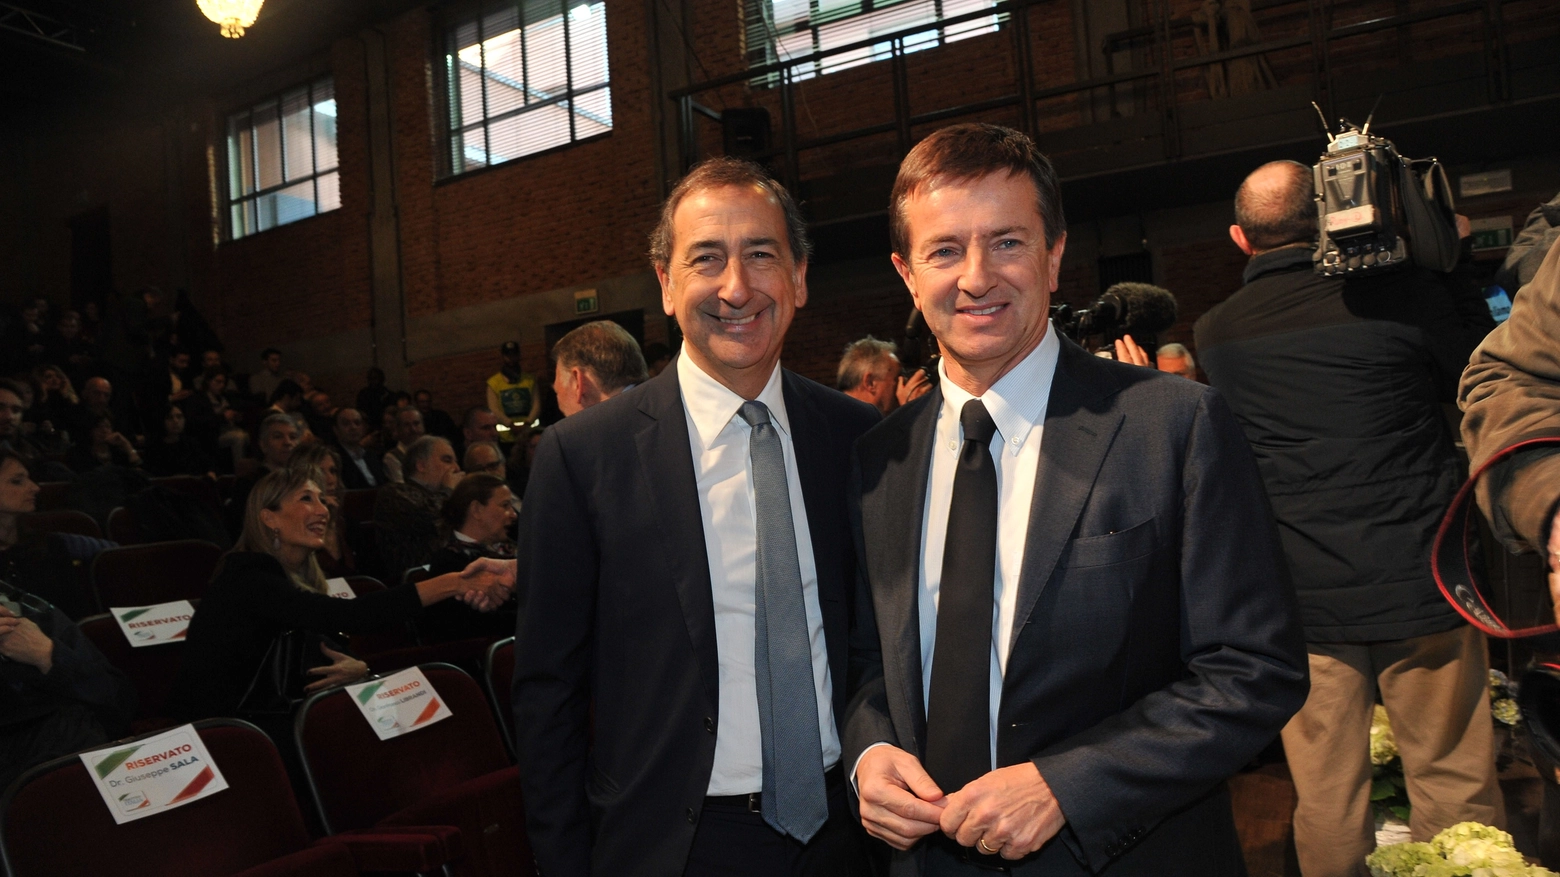 L'attuale sindaco di Bergamo potrebbe candidarsi per sfidare il presidente Roberto Maroni